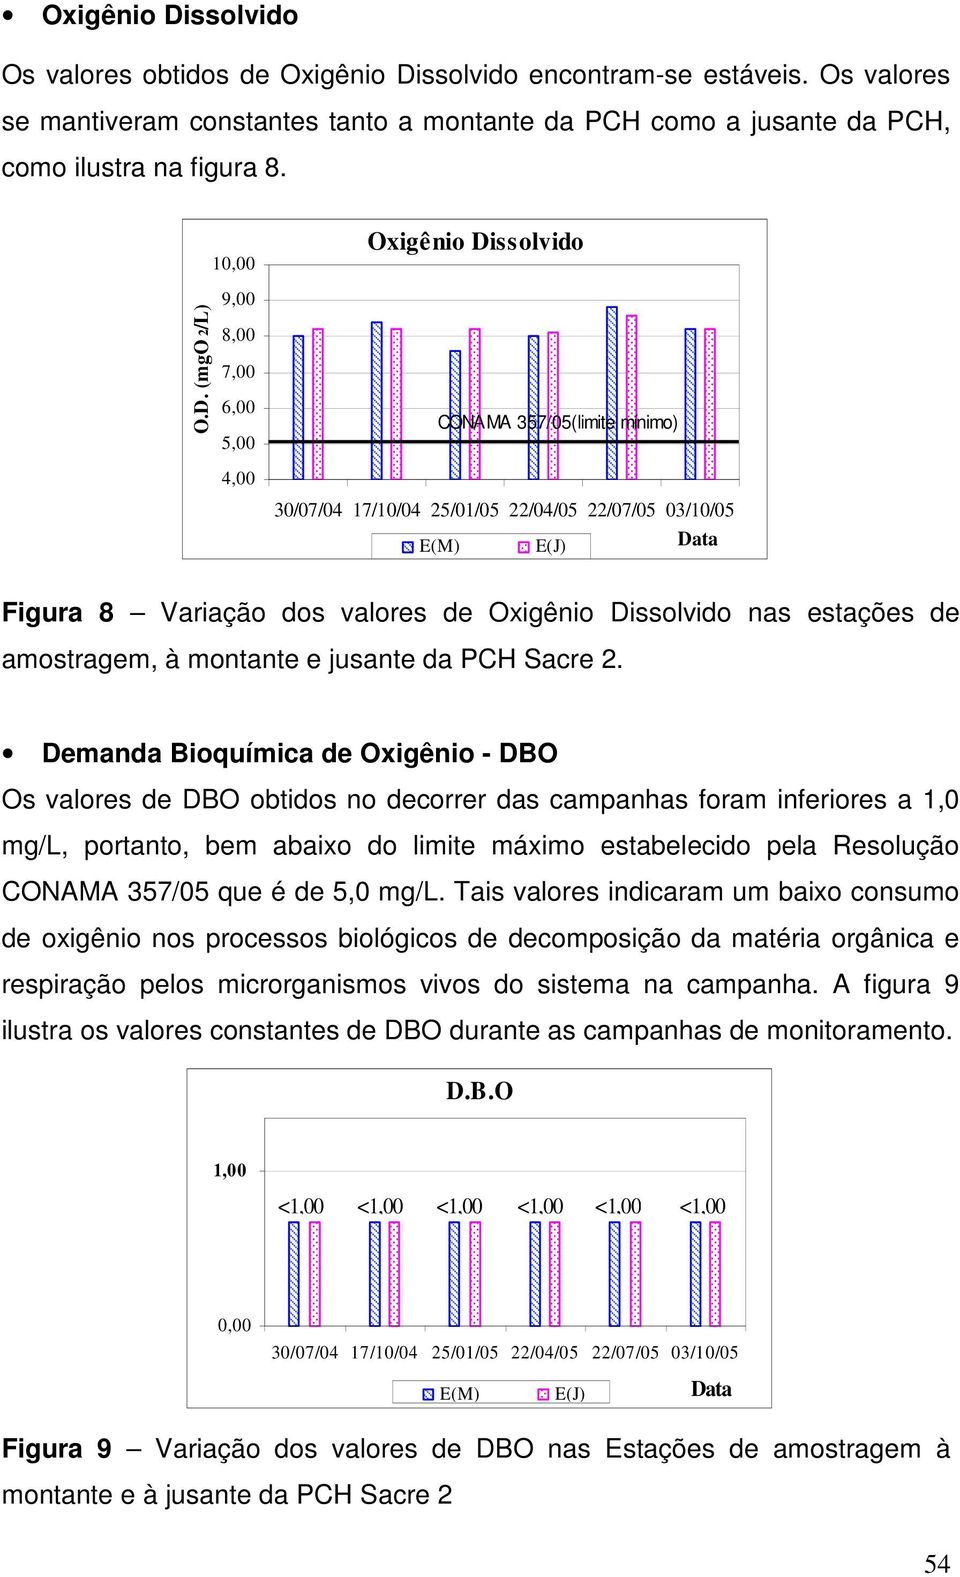 Demanda Bioquímica de Oxigênio - DBO Os valores de DBO obtidos no decorrer das campanhas foram inferiores a 1,0 mg/l, portanto, bem abaixo do limite máximo estabelecido pela Resolução CONAMA 357/05